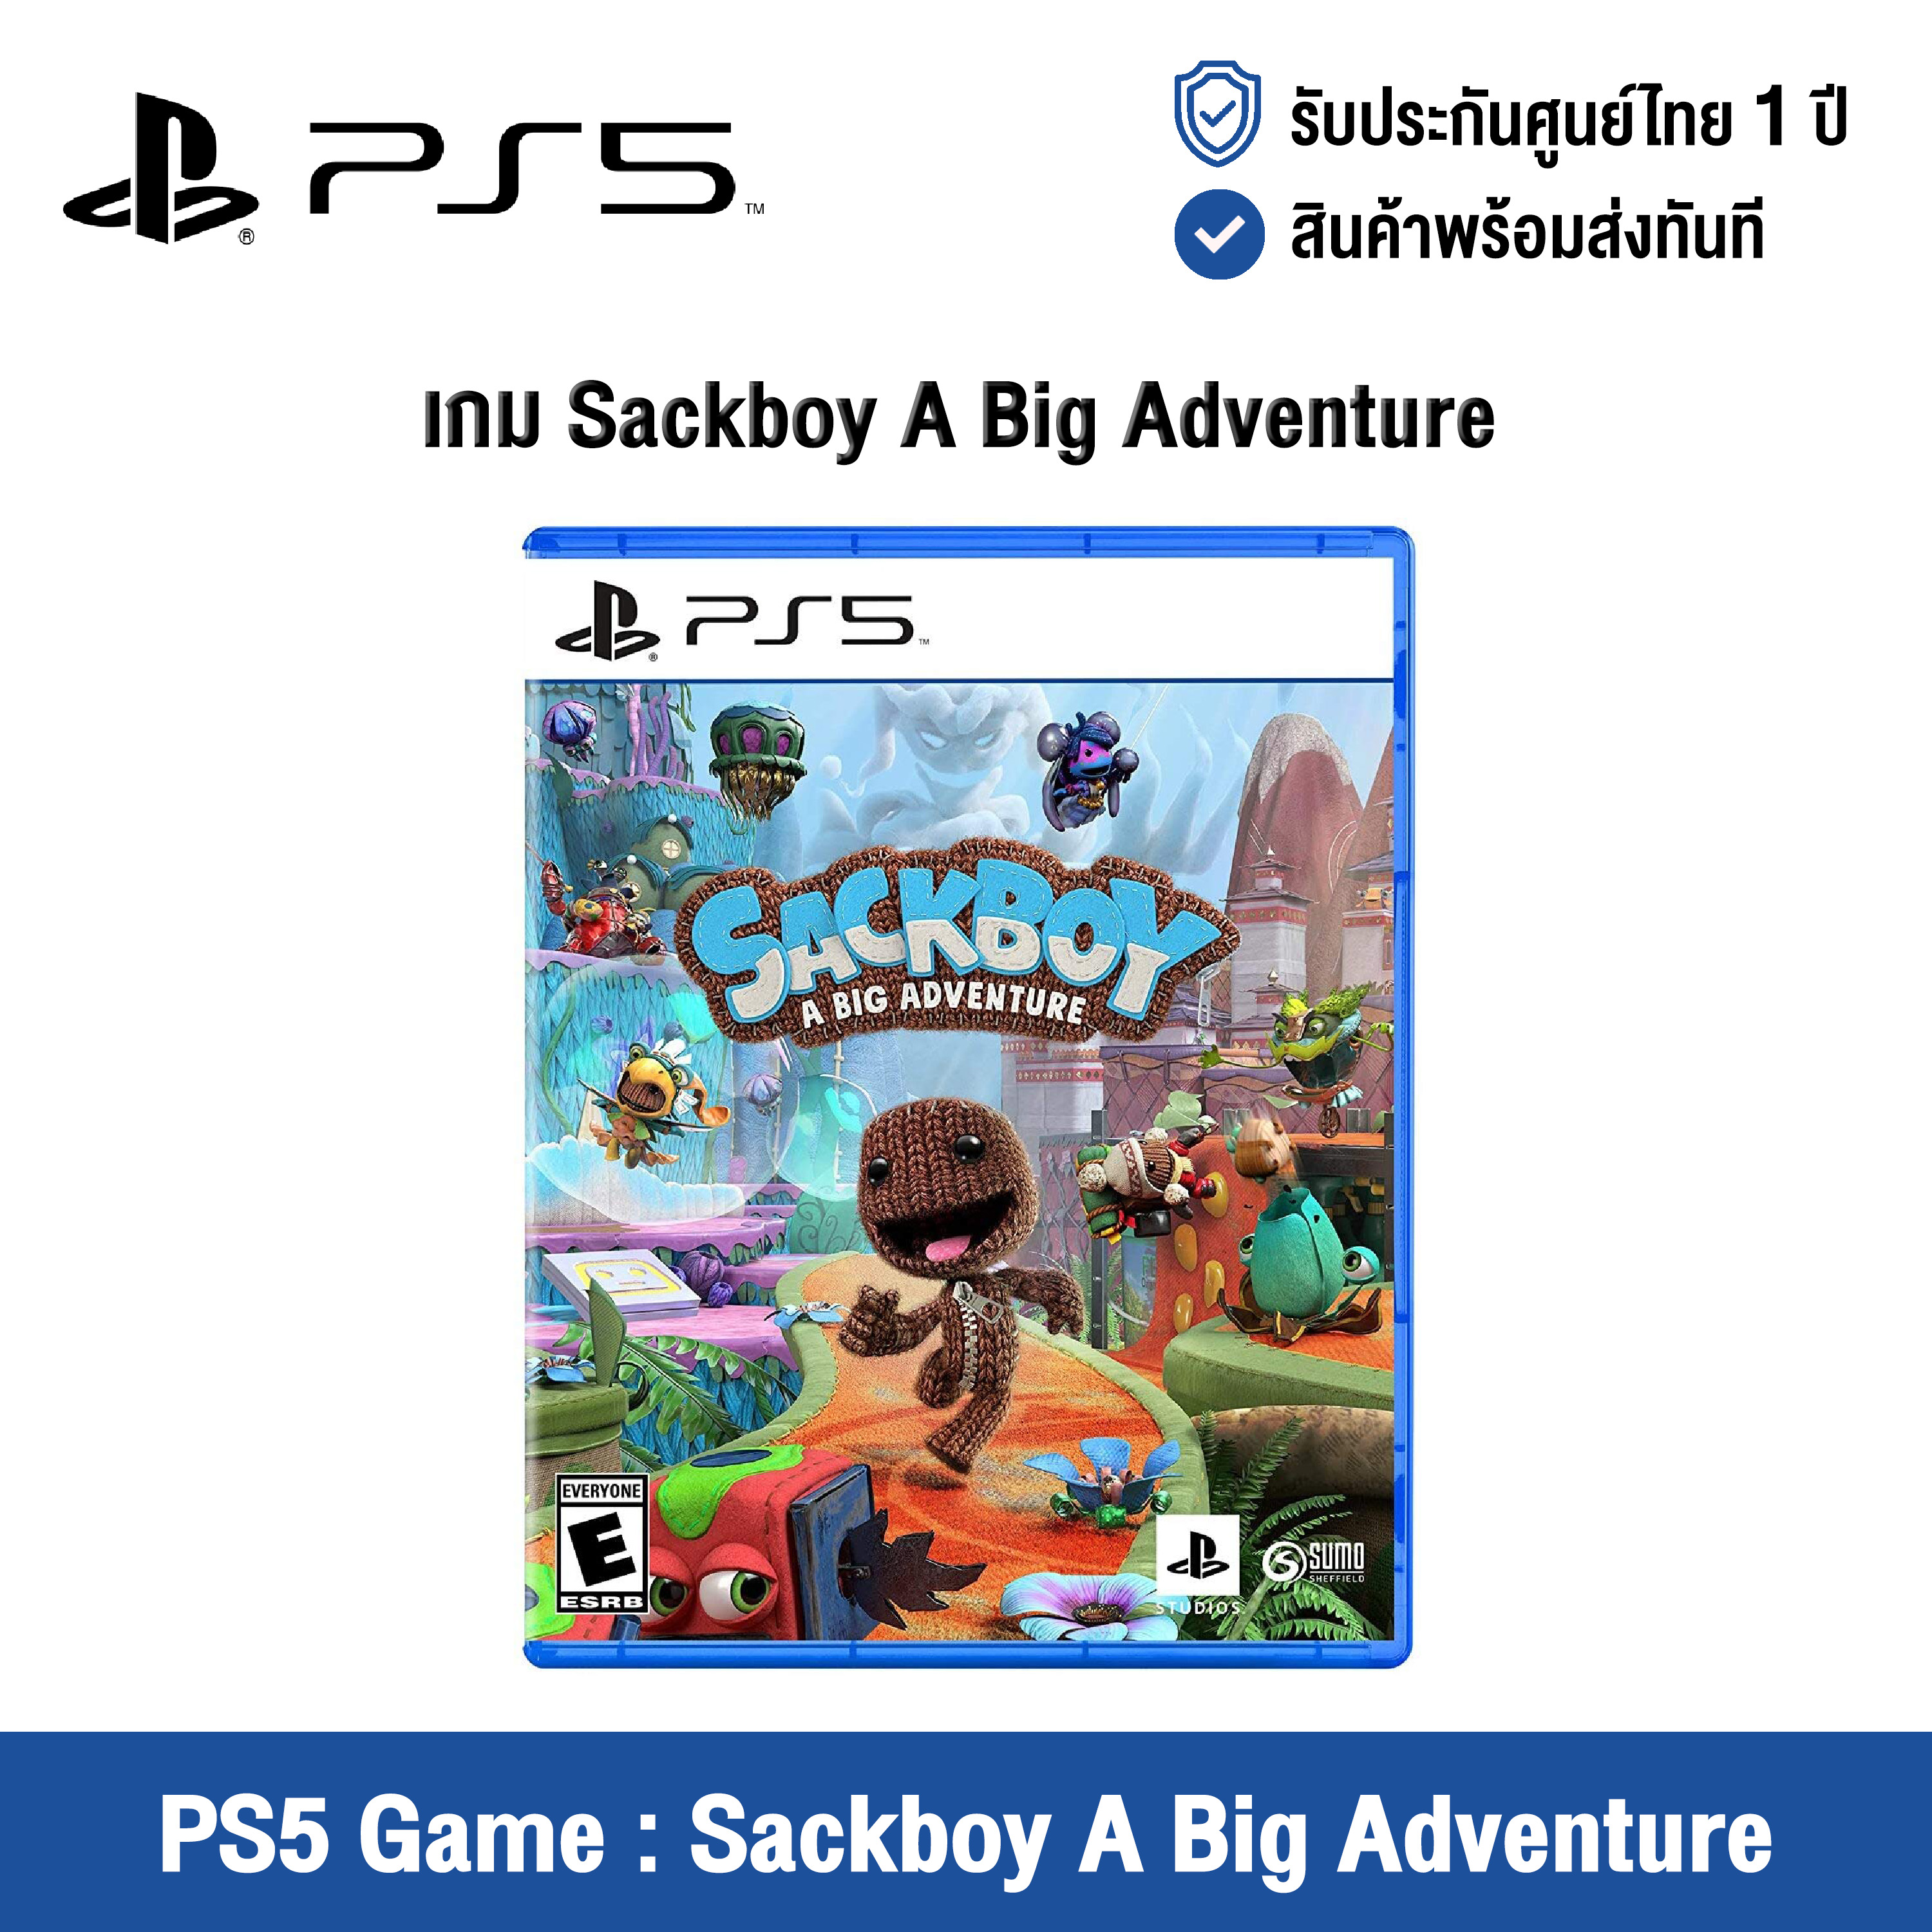 [ศูนย์ไทย] PS5 Game : Sackboy A Big Adventure - แผ่นเกมส์ Sackboy A Big Adventure (English Version)